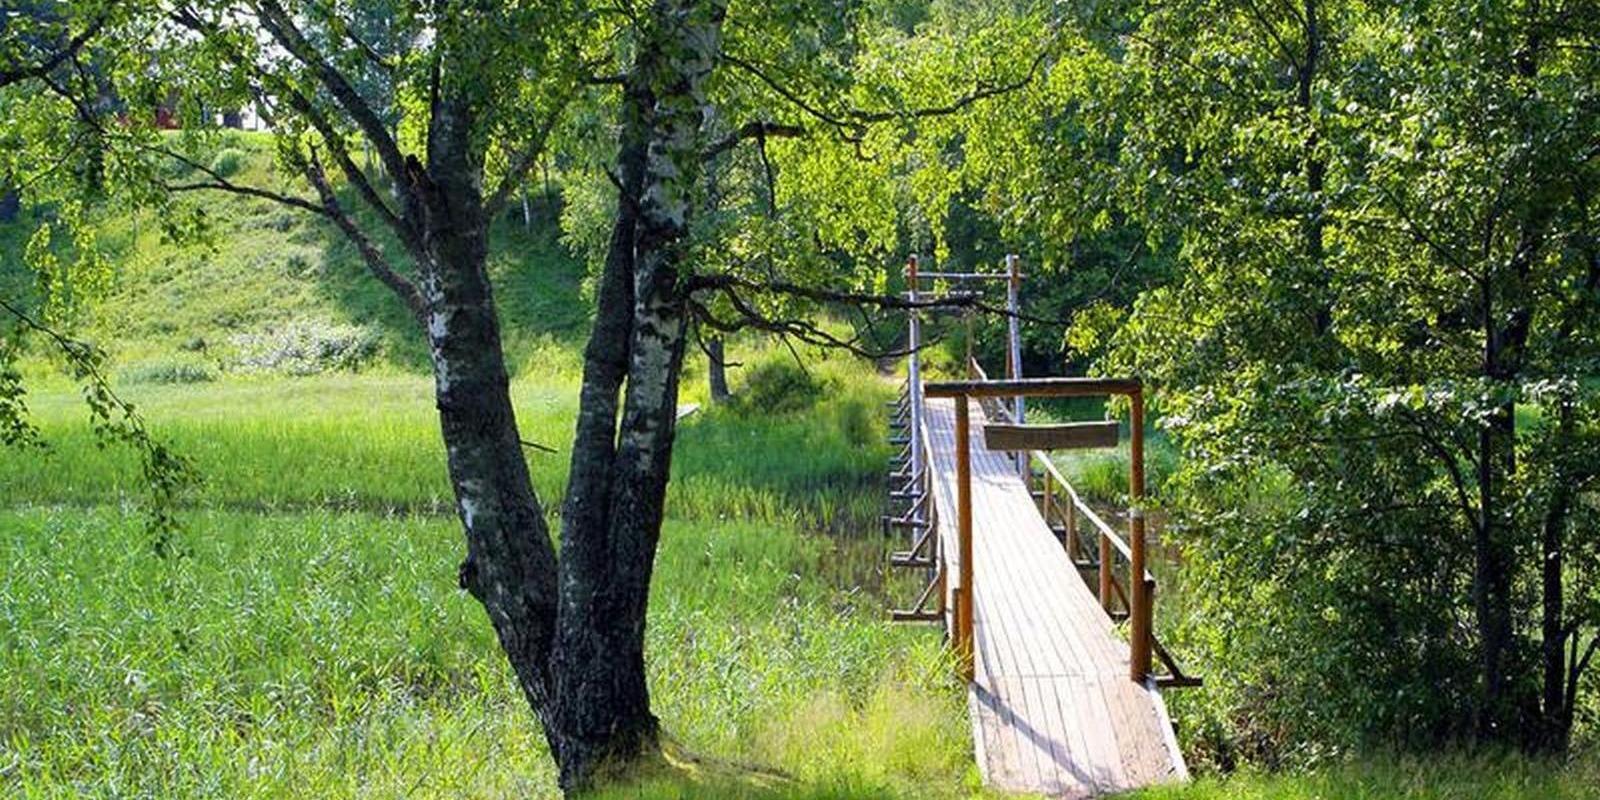 5,2 km pituinen polku mutkittelee Õrsavan järven ympärillä ja tarjoaa kauniita näkymiä. Polulla on useita porrassiltoja pienten purojen yli. Polku esi